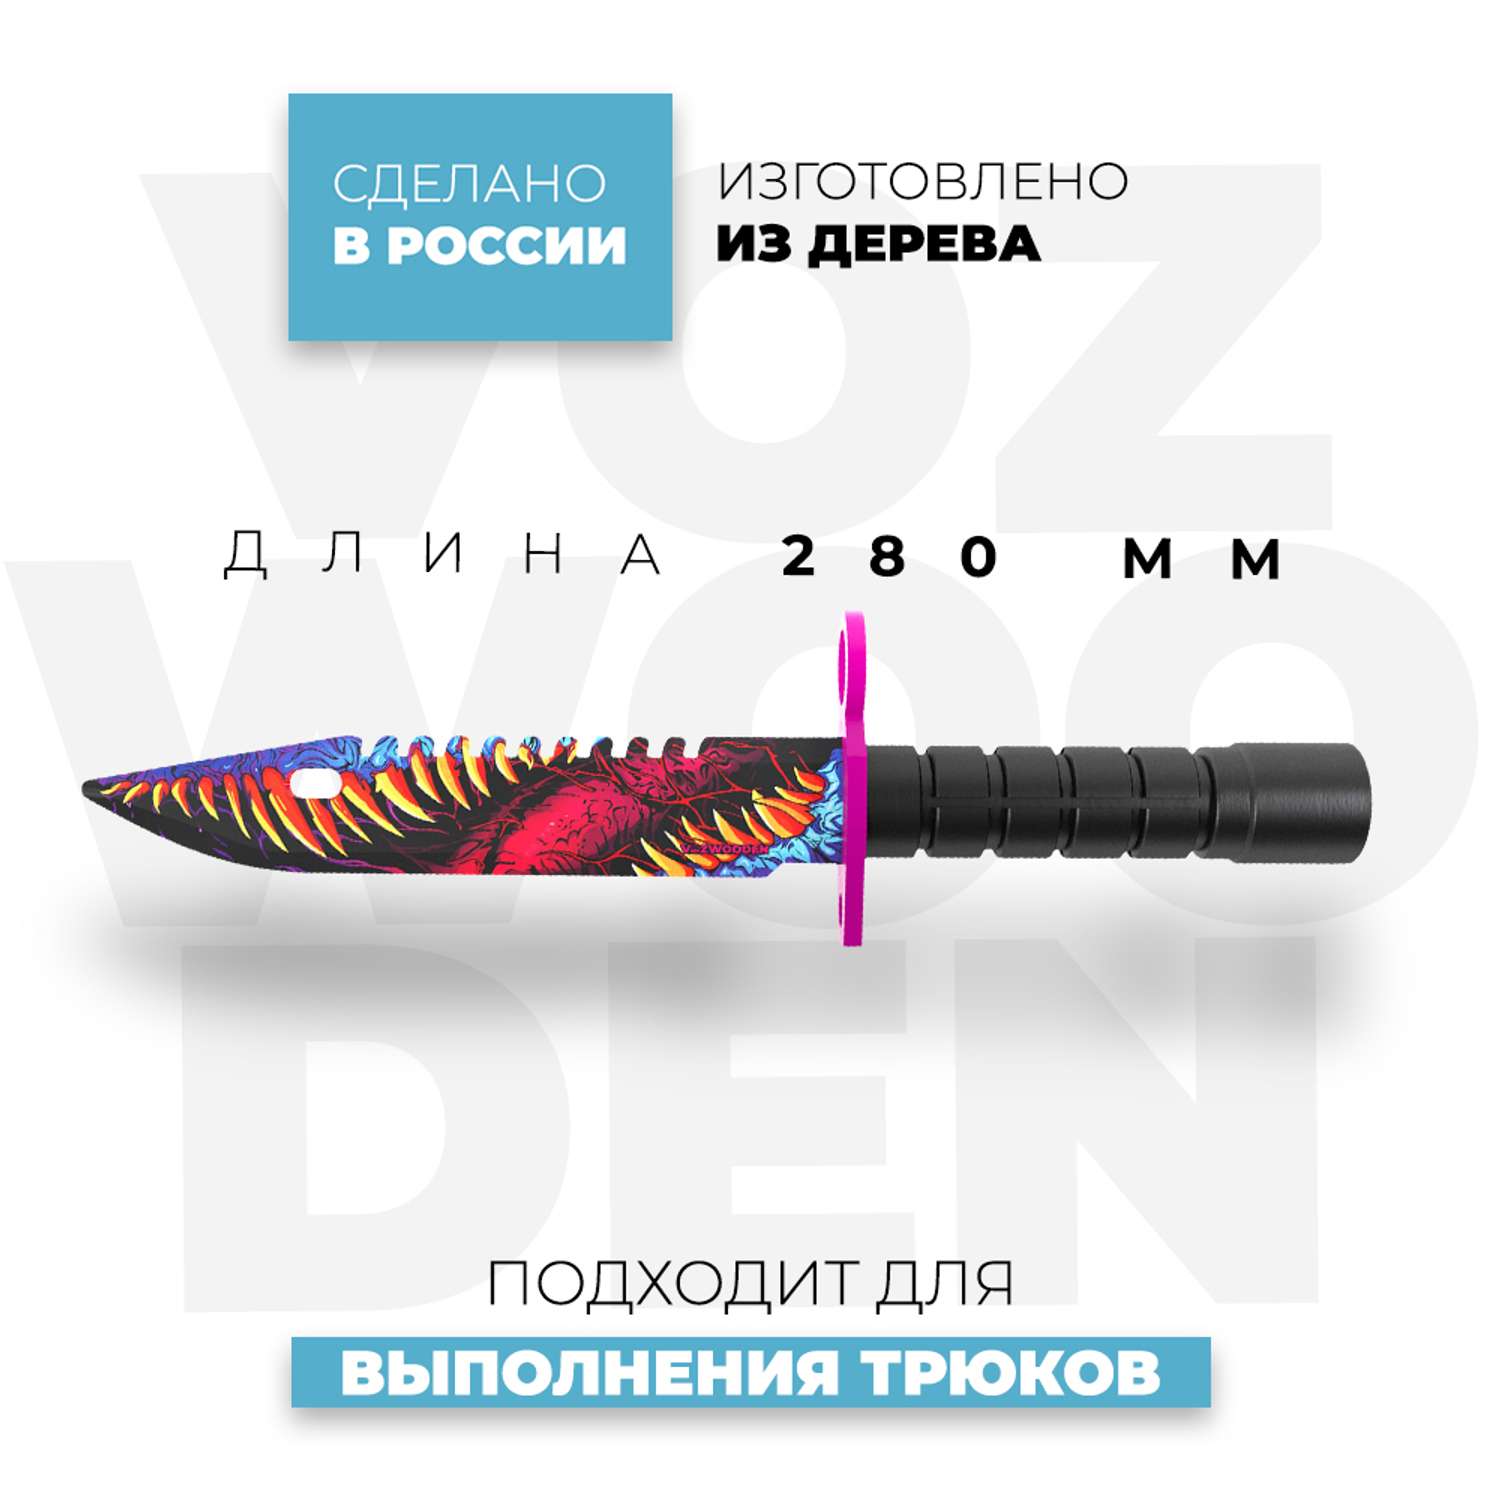 Штык-нож VozWooden Скоростной Зверь CS GO деревянный М9 Байонет - фото 3